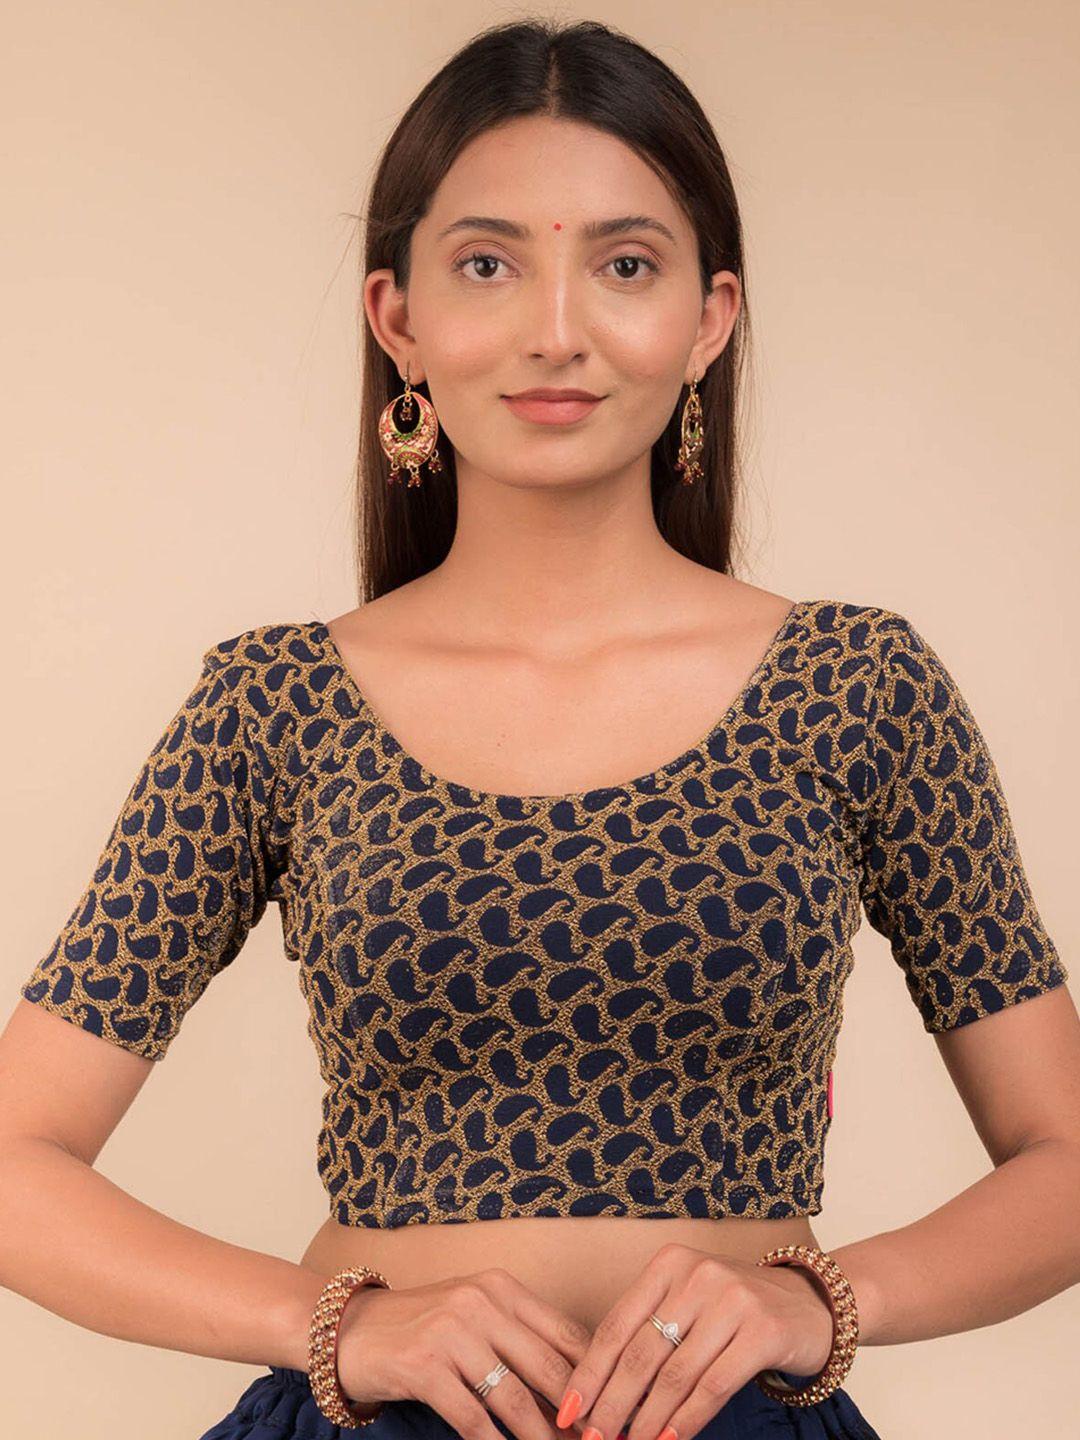 bindigasm's advi embellished	
 saree blouse